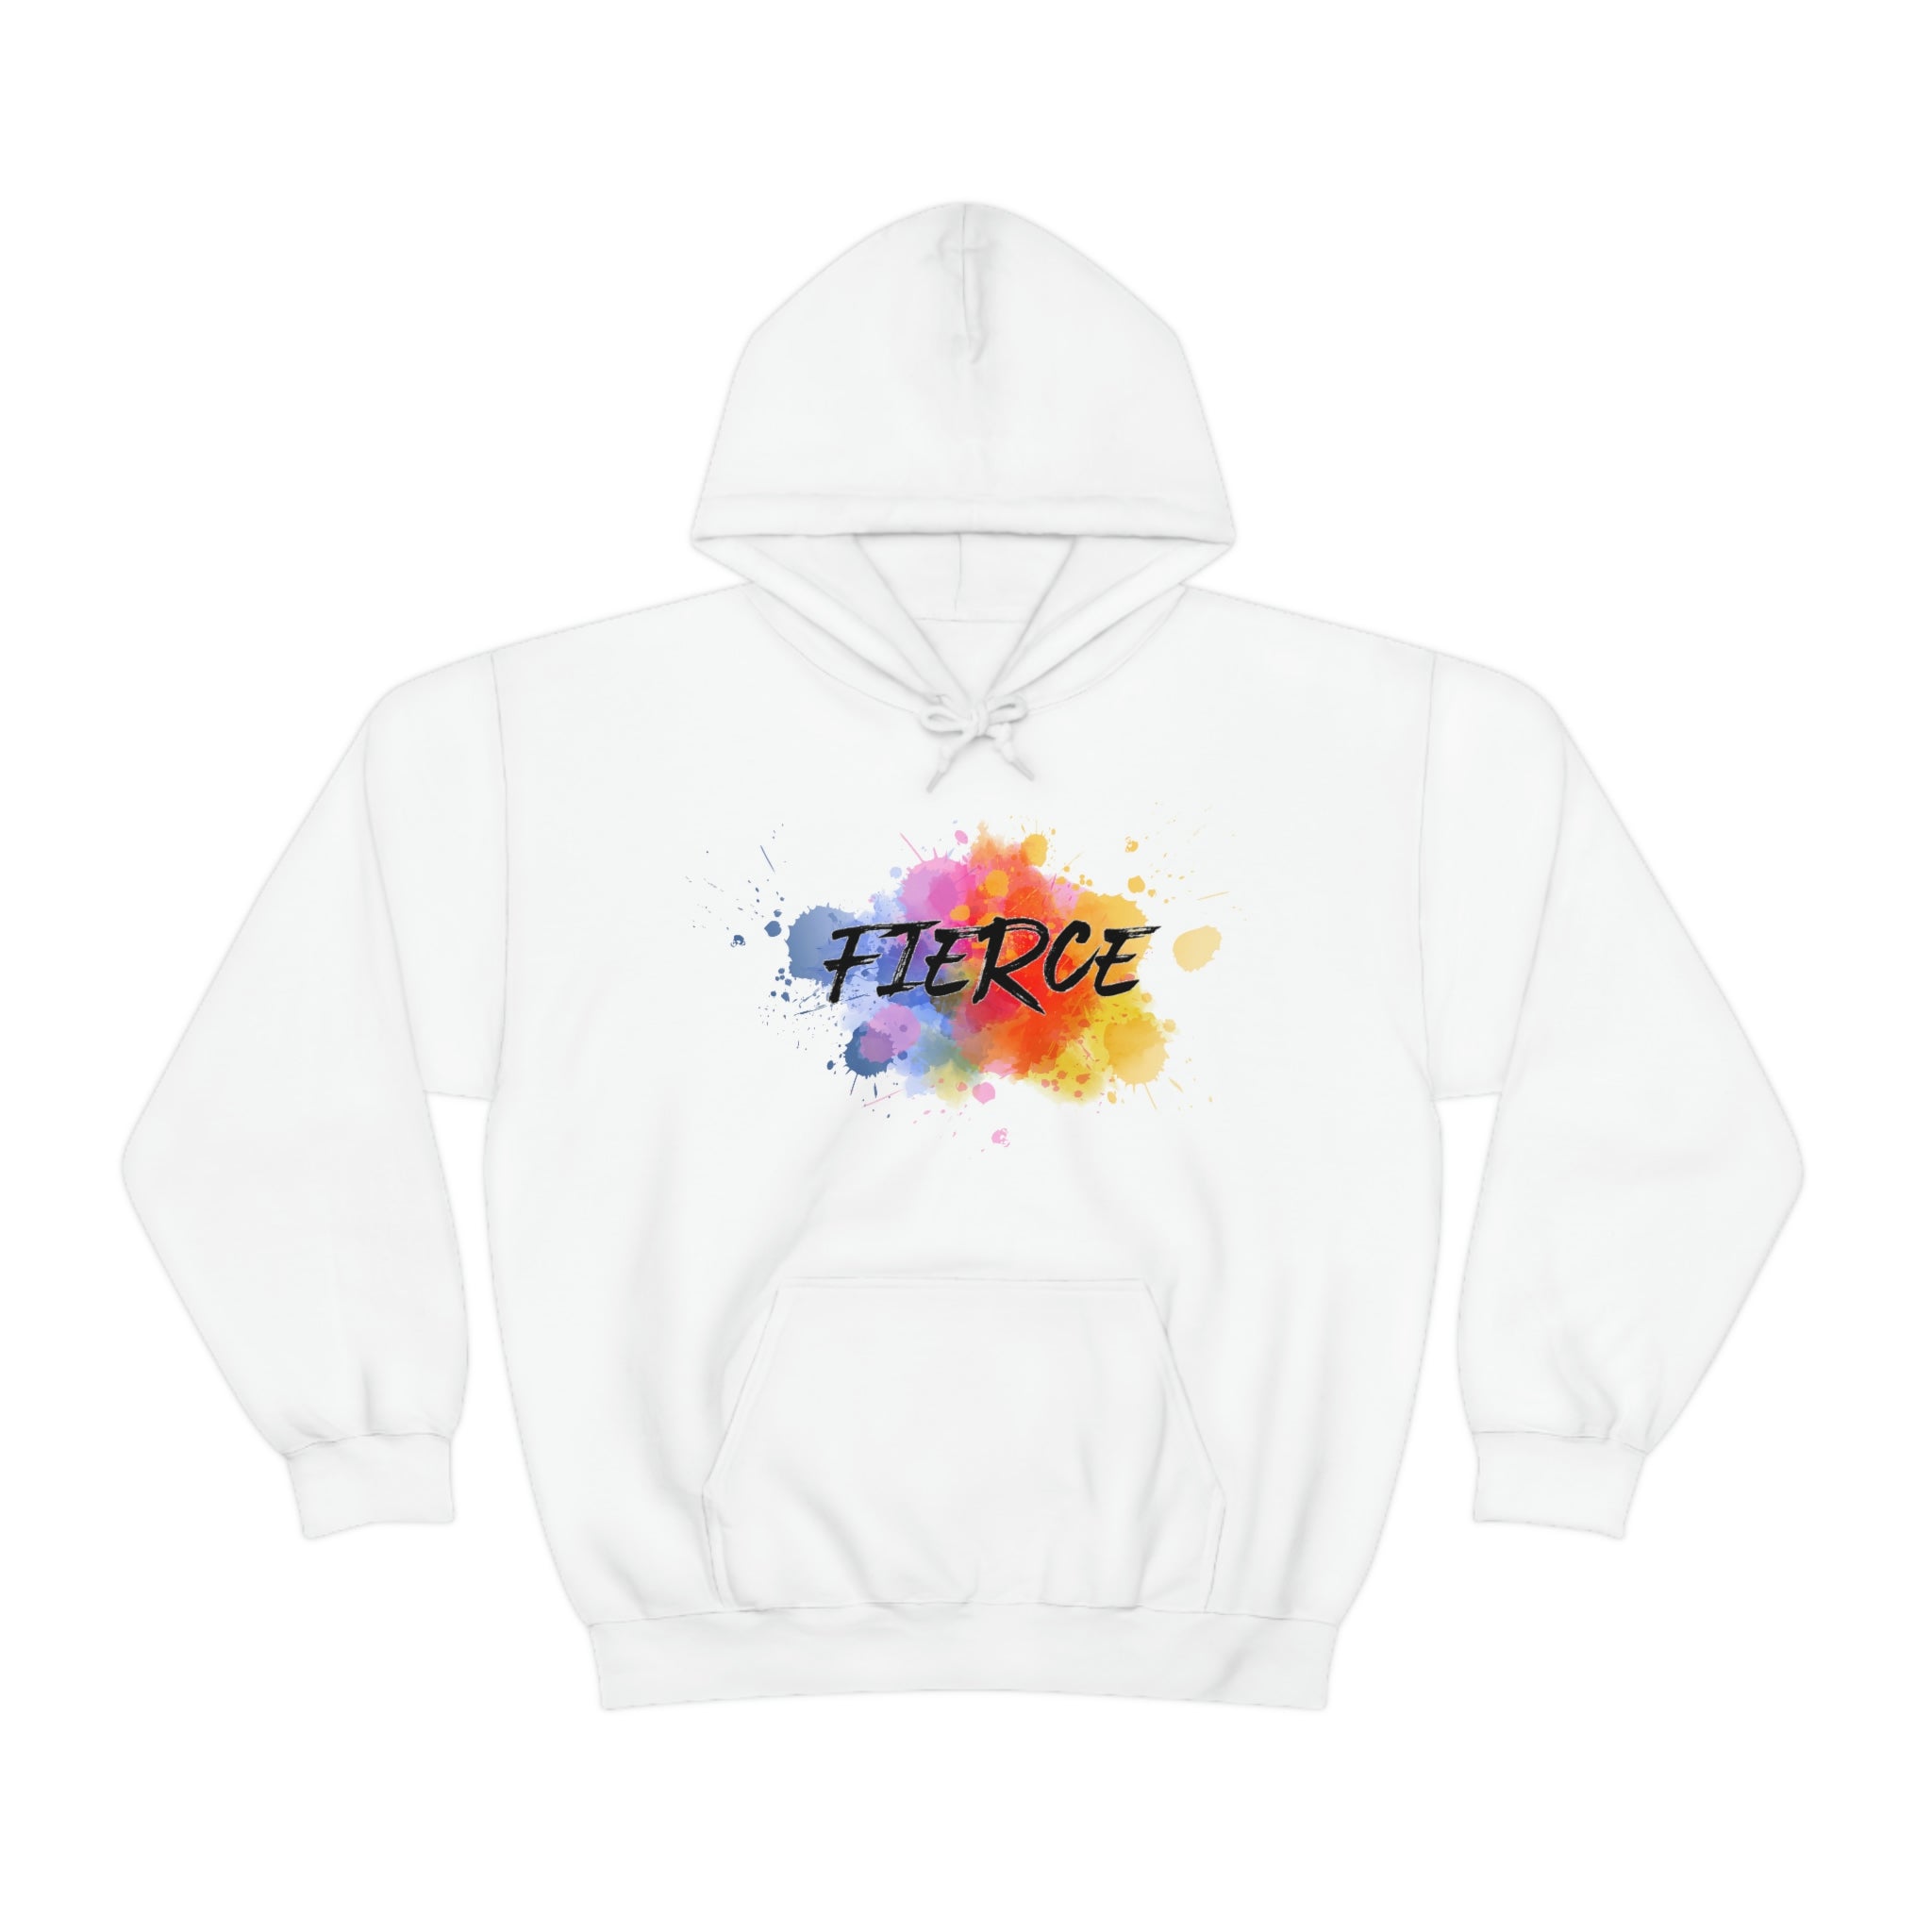 "Fierce" Unisex Heavy Blend™ Hooded Sweatshirt - 5 colors